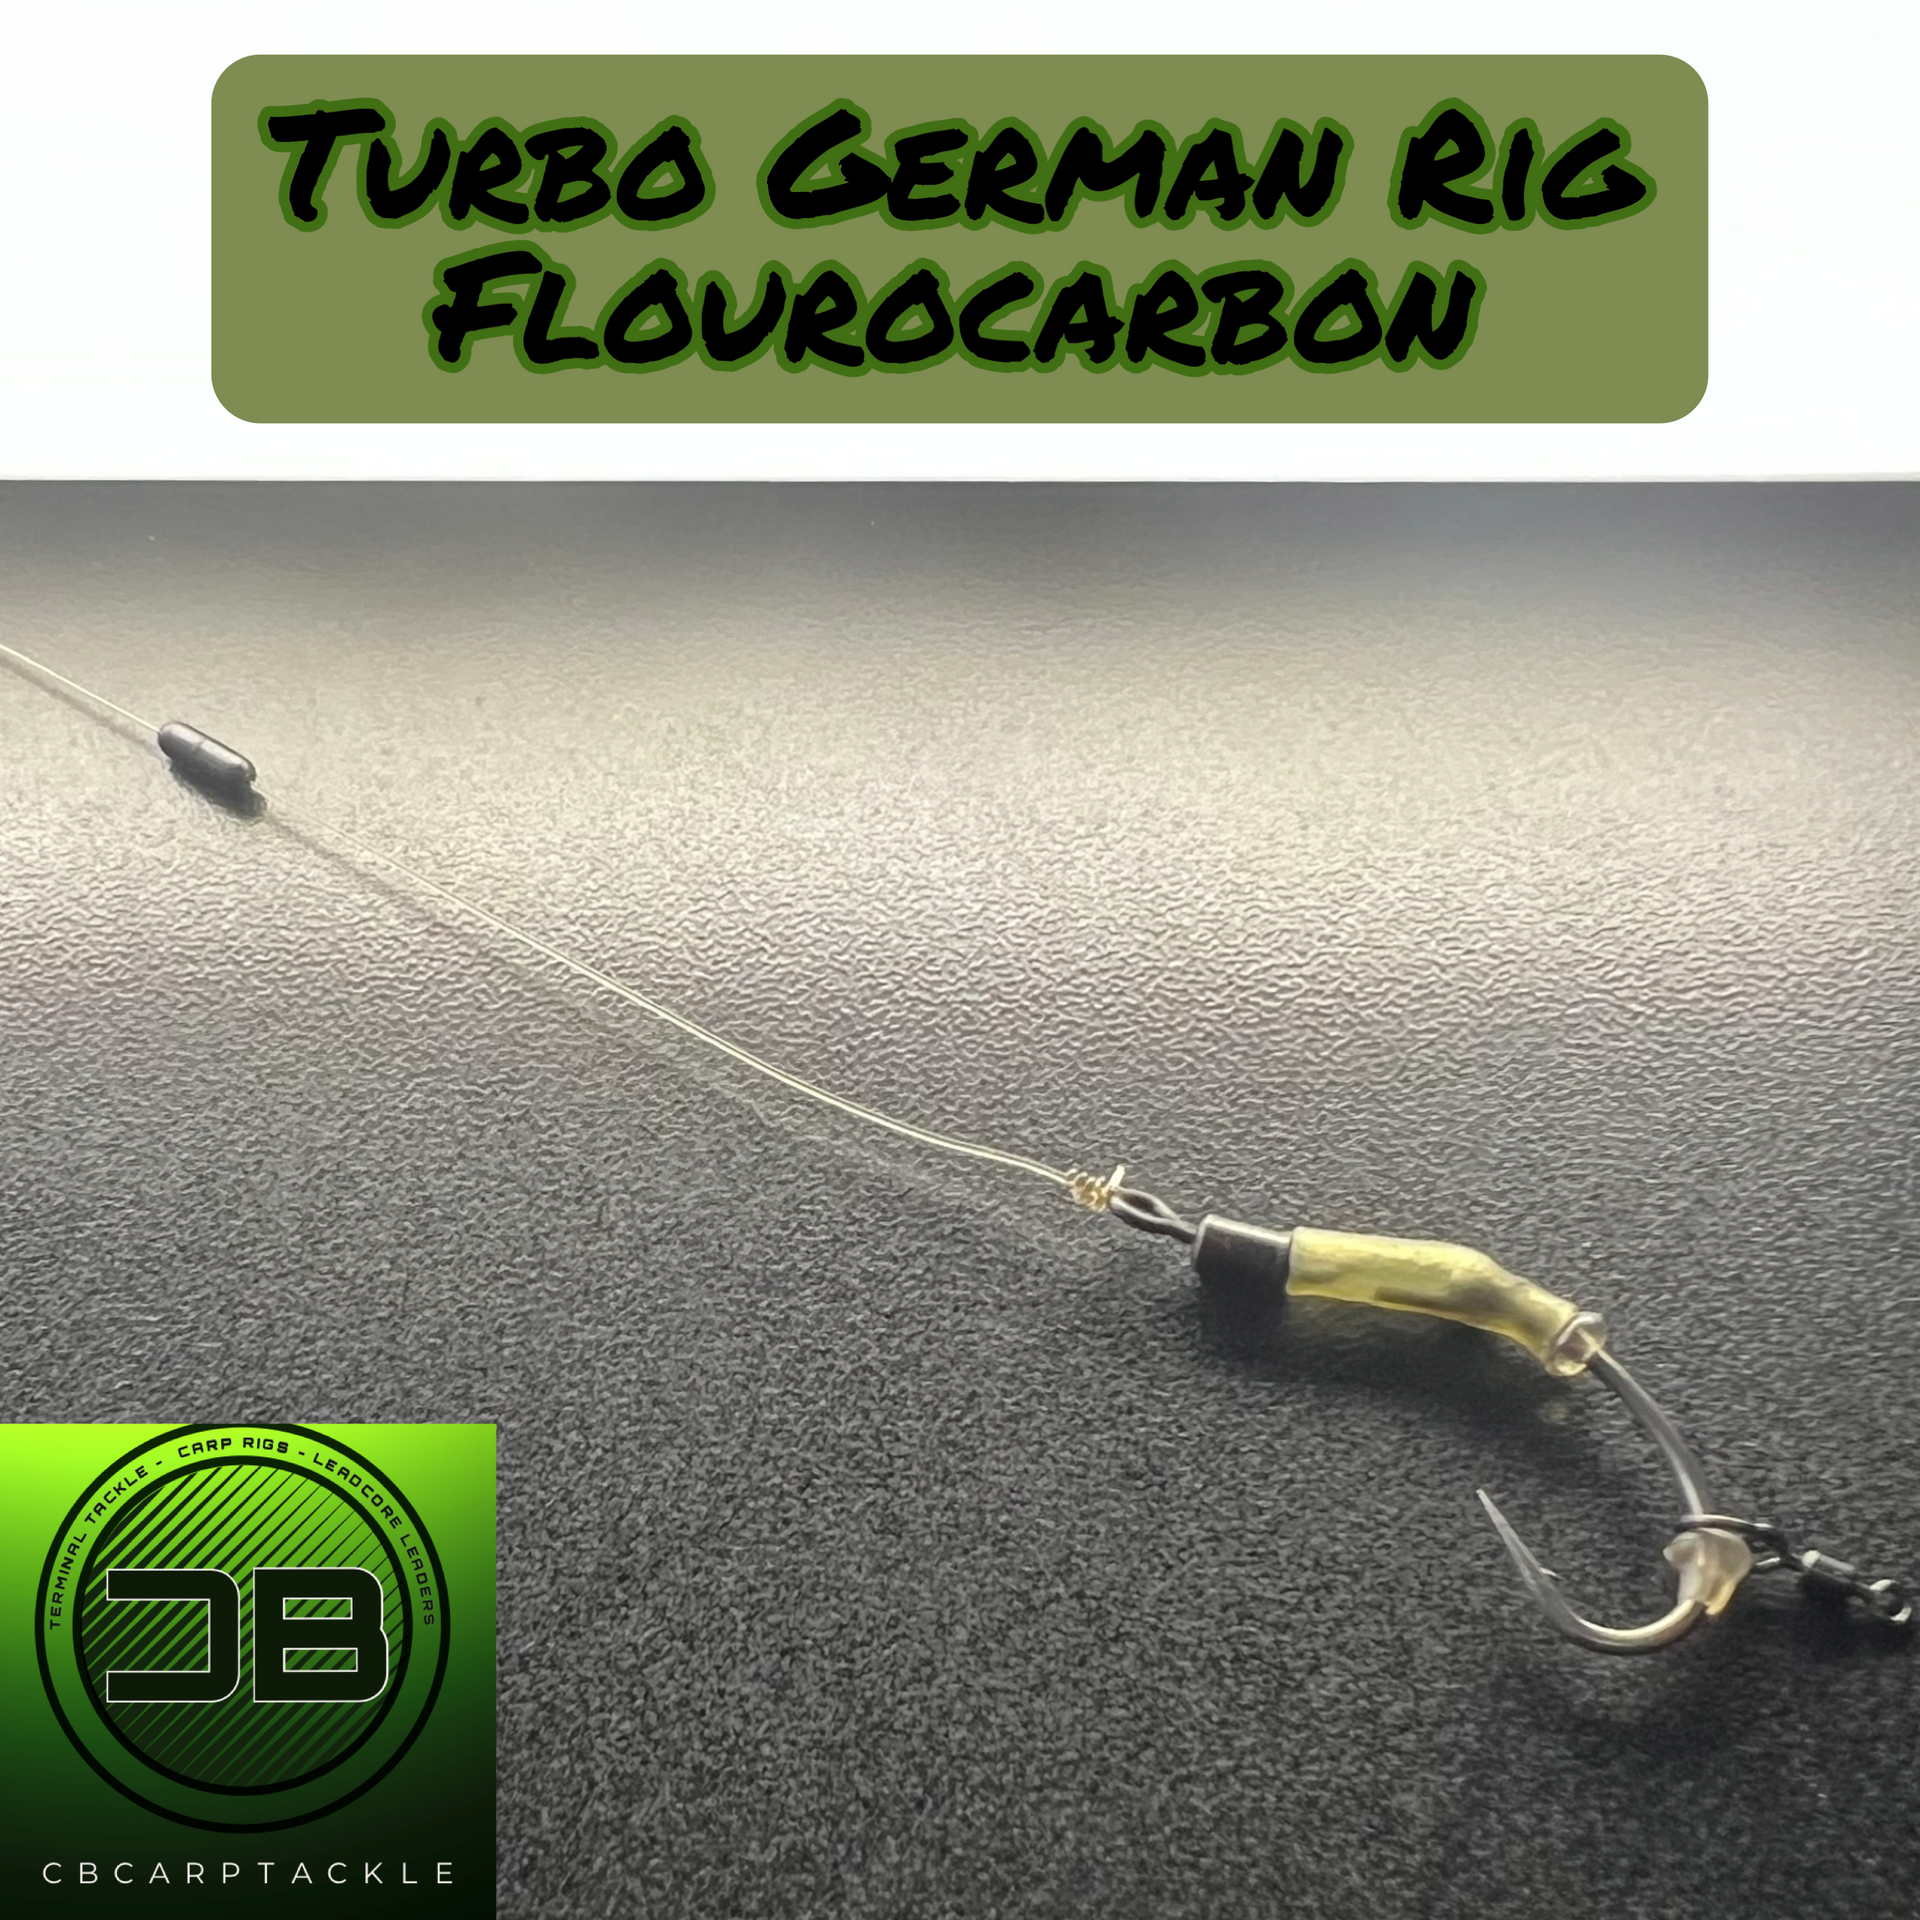 Turbo German Rig Flouro – CBcarptackle